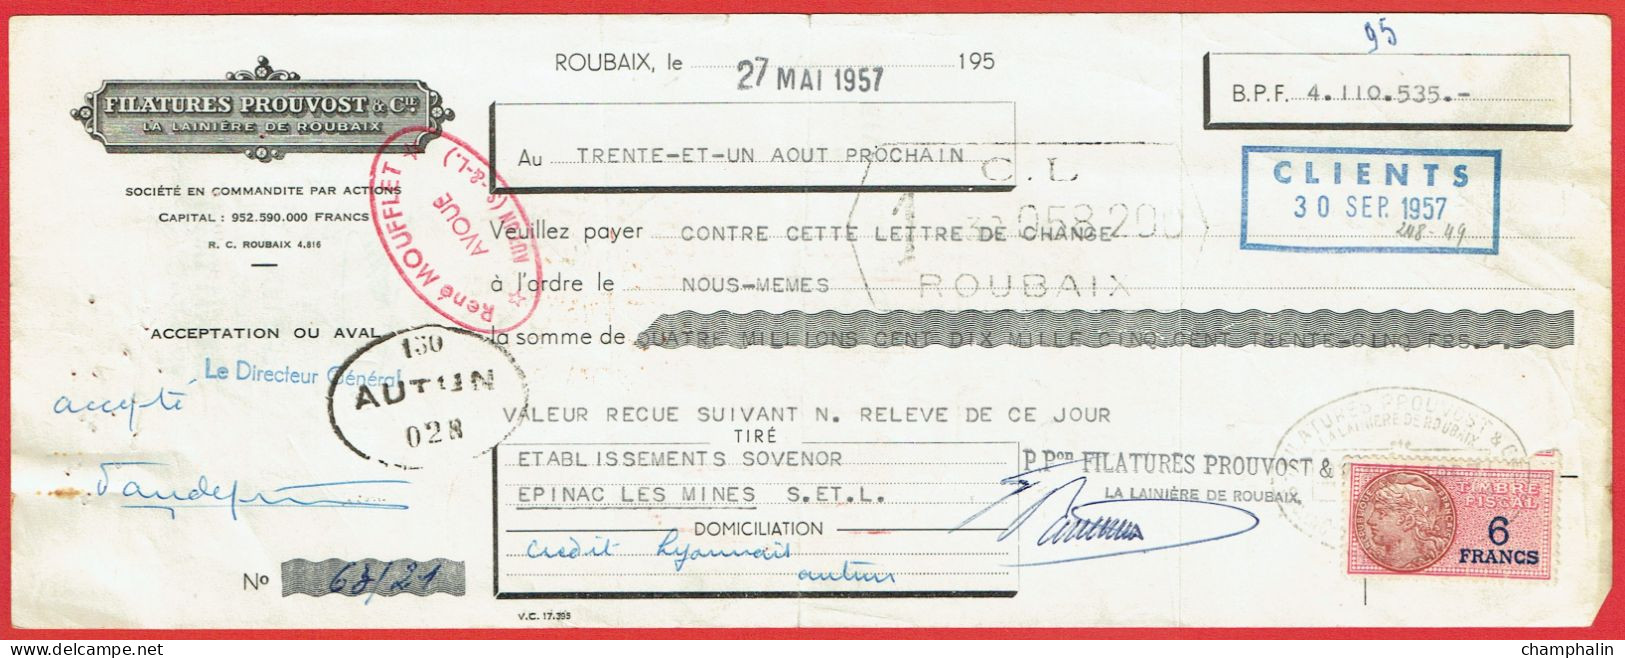 Lot 8 Lettres De Change De Roubaix (59) Pour Epinac-les-Mines (71) - 1957 - Timbre TF N°439-440 - Filatures Prouvost - Lettres De Change